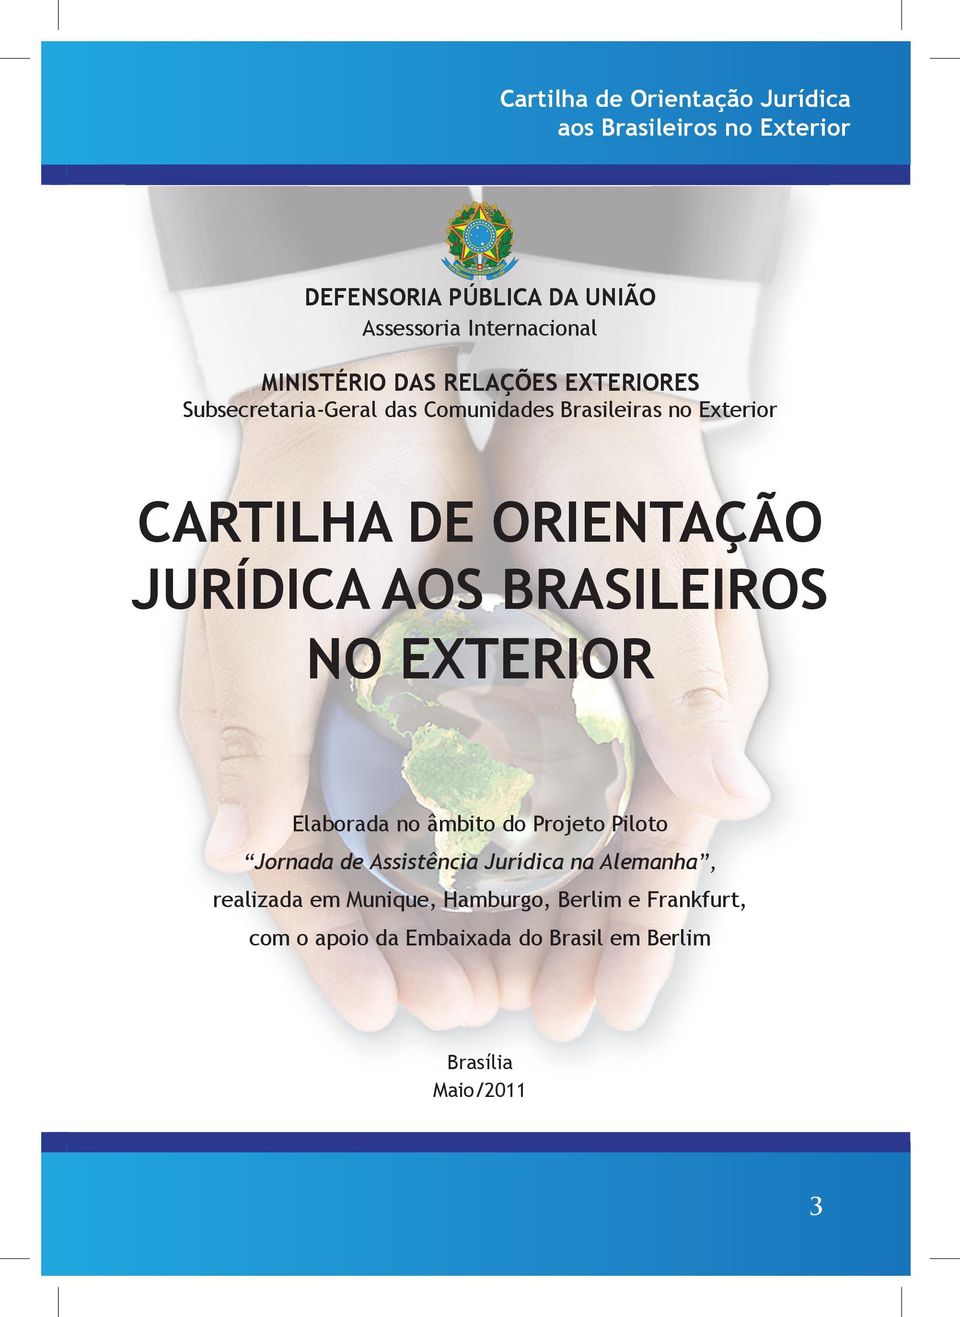 BRASILEIROS NO EXTERIOR Elaborada no âmbito do Projeto Piloto Jornada de Assistência Jurídica na